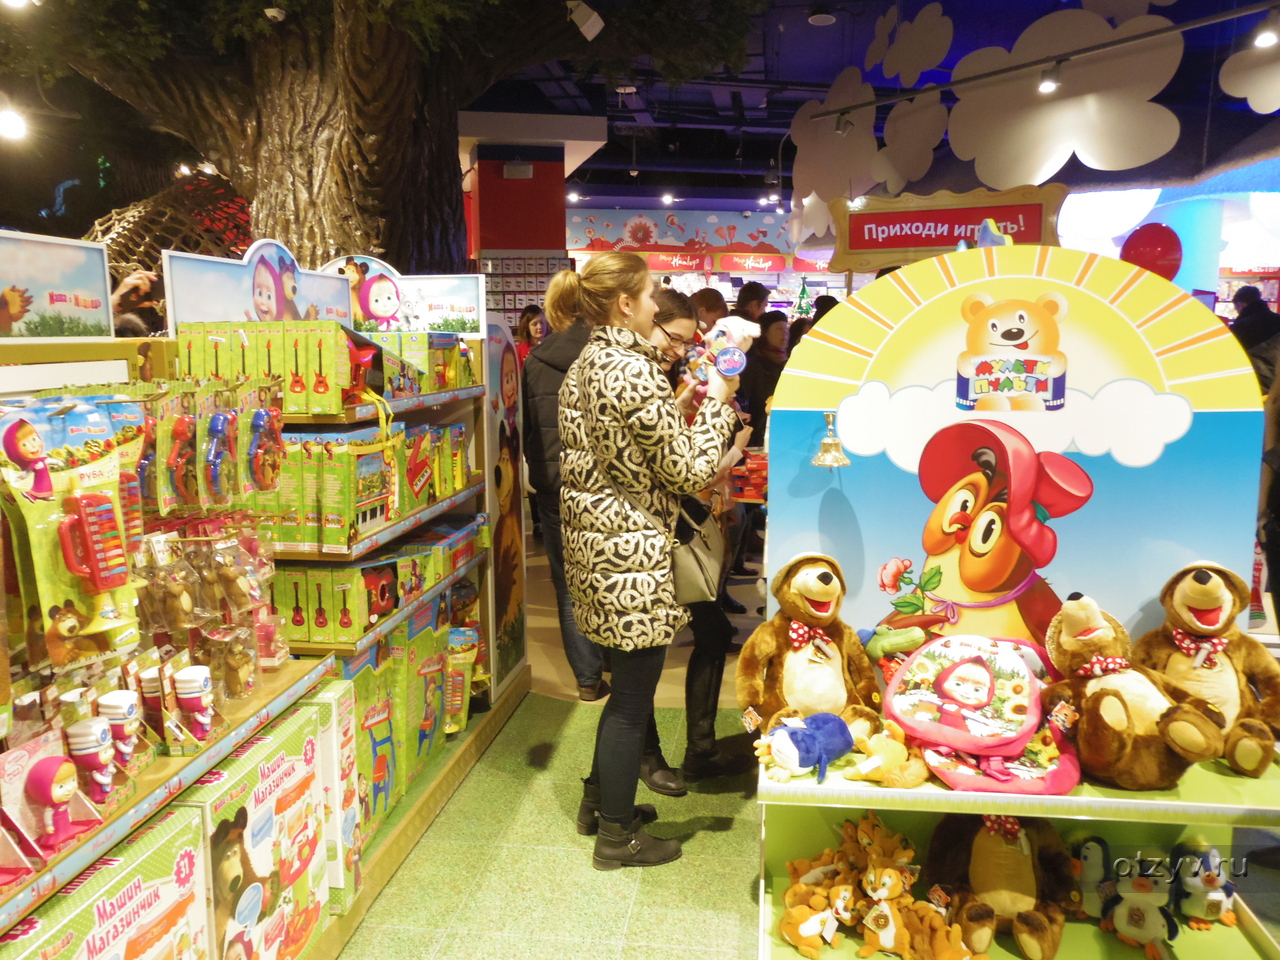 Где В Москве Магазин Детский Мир